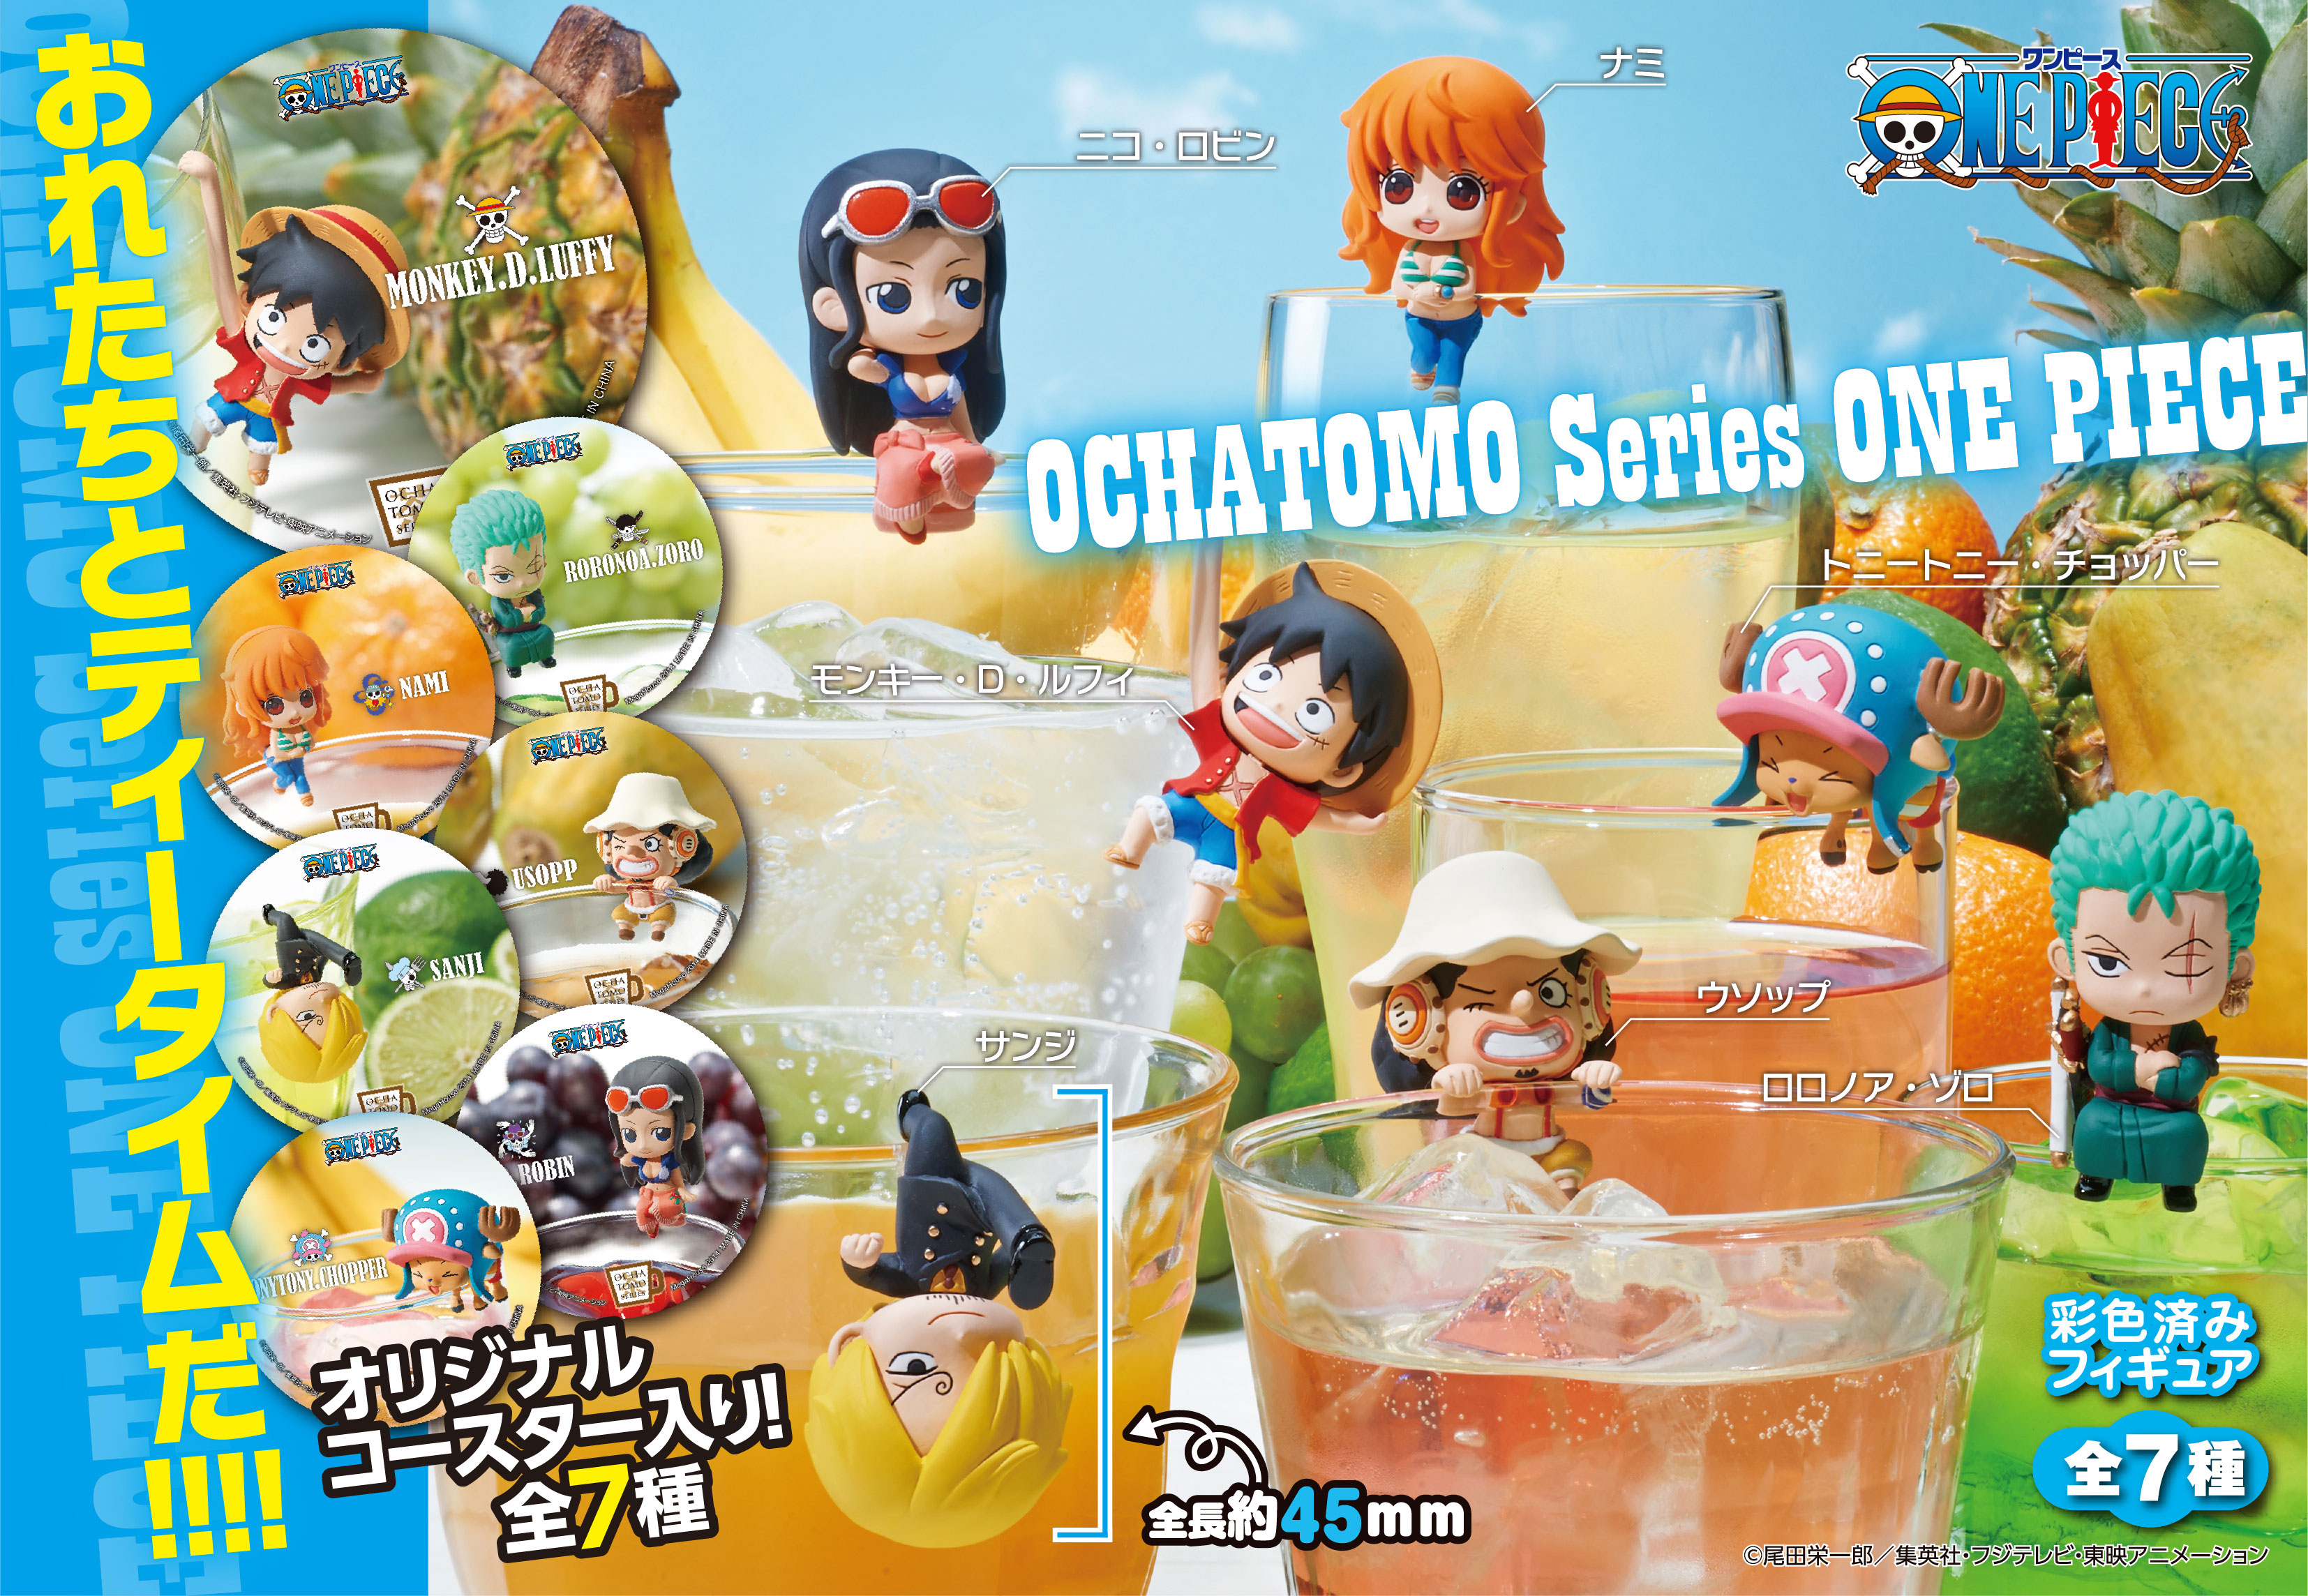 [Pre-order] OchaTomo Series "One Piece" Pirates Tea Time